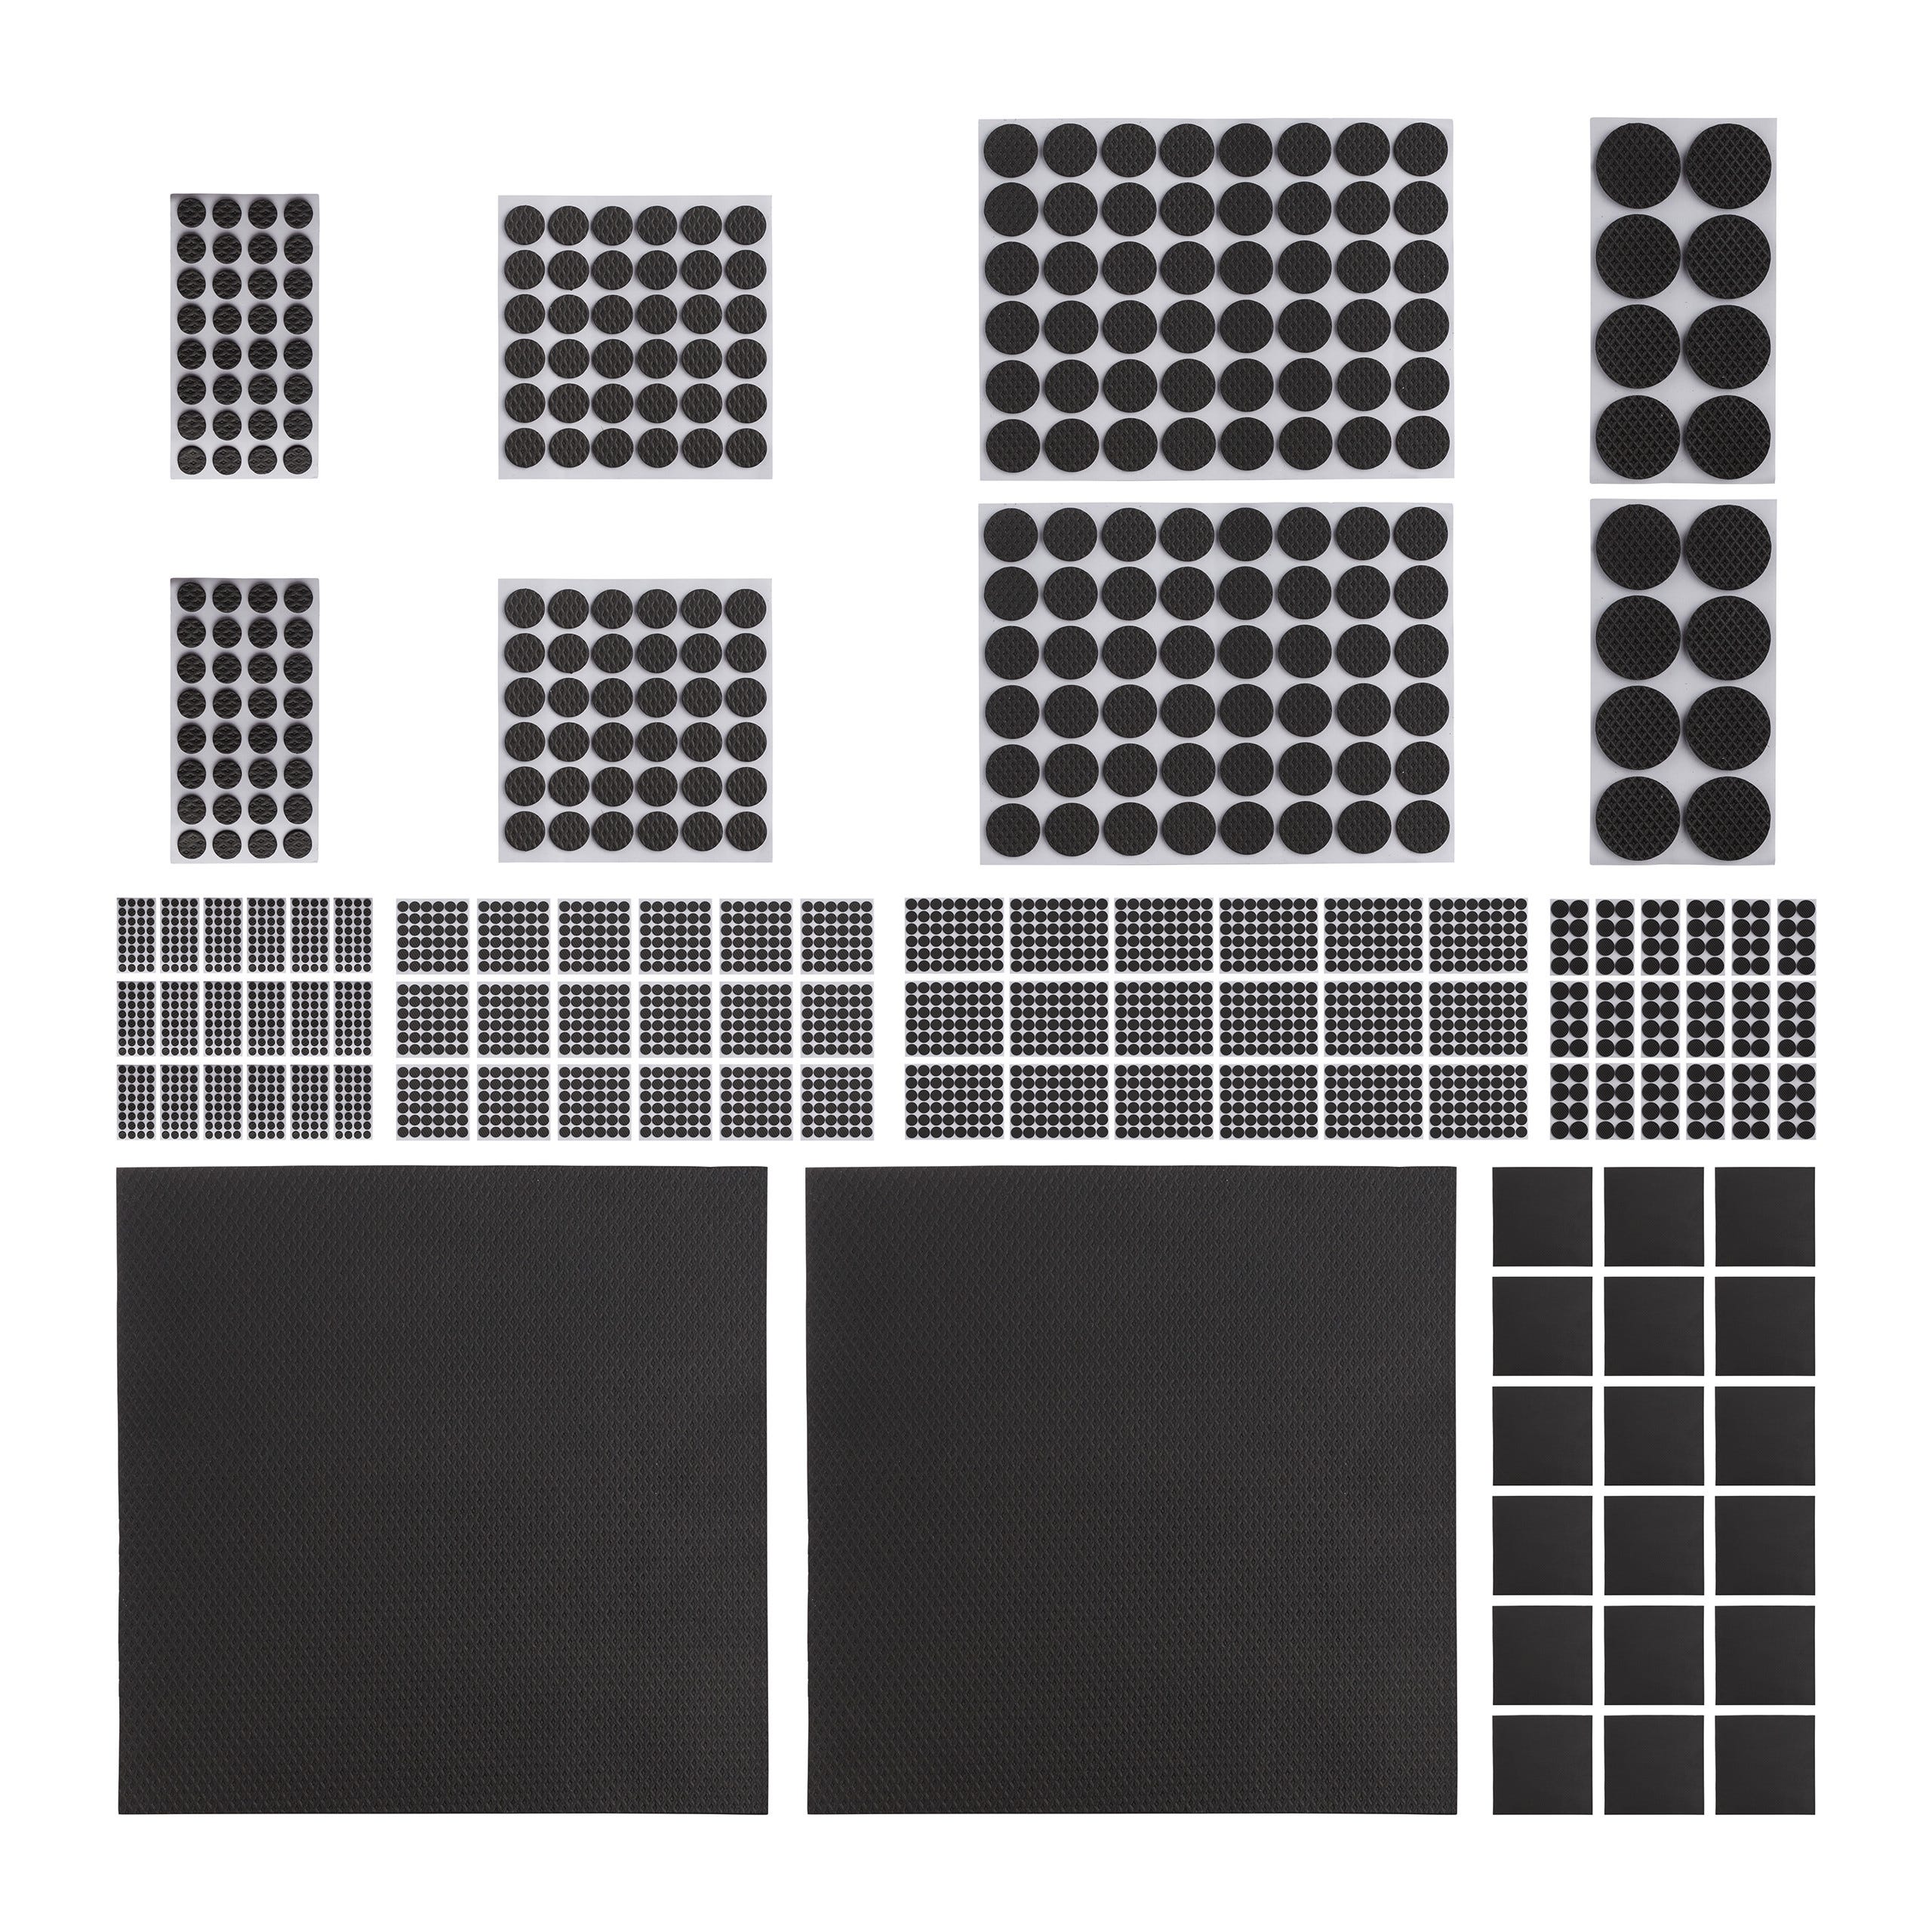 Patins en feutre, 160 pièces patins pour meubles (carrés et ronds), noirs, patins  pour